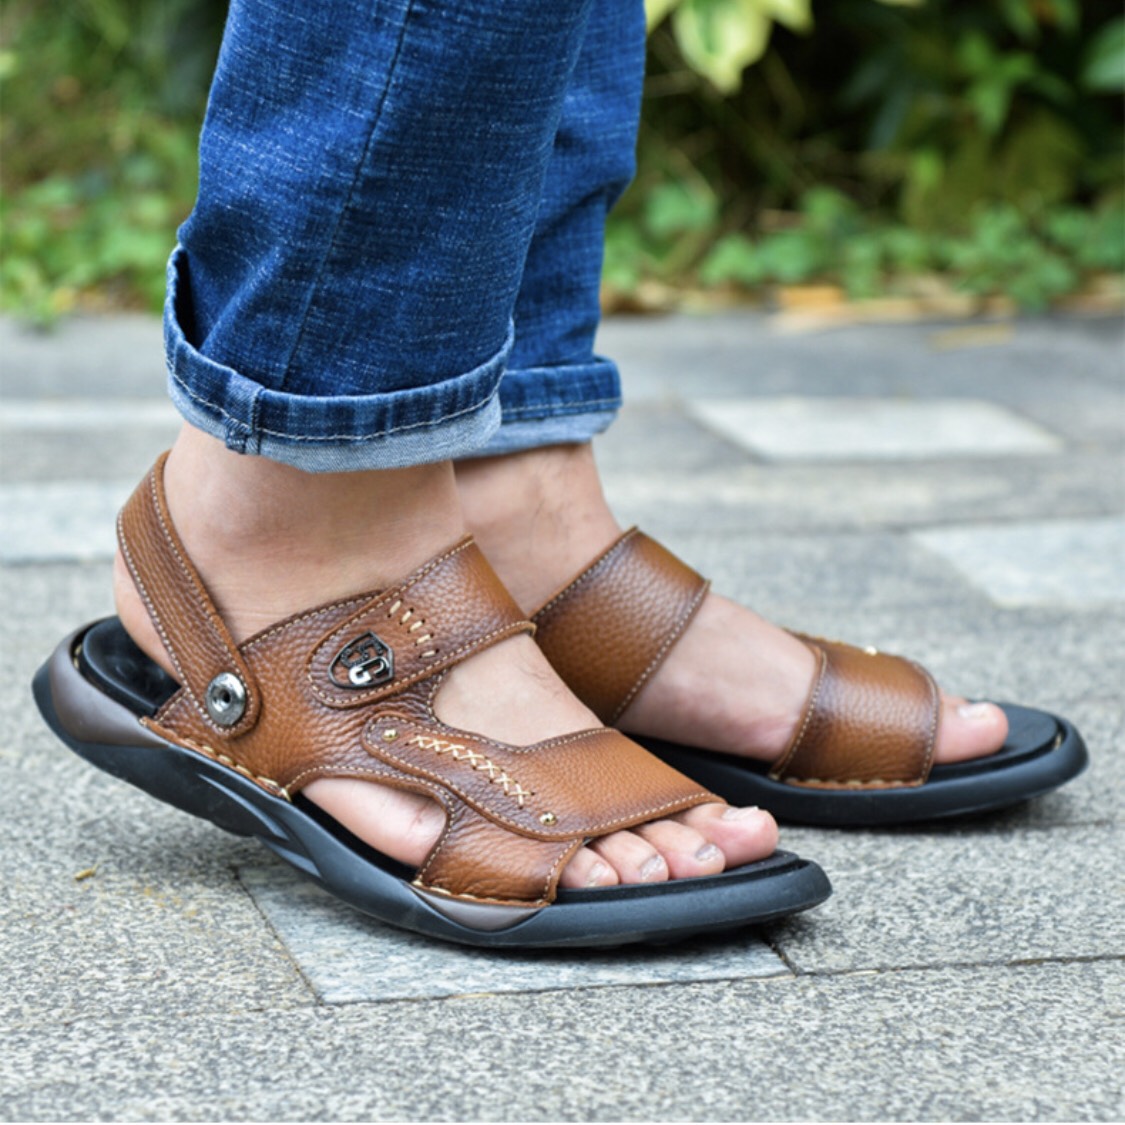 Sandal da bò đế kếp, da thật 100% kết hợp đế kếp cao 3,5cm cực đẹp khâu may chân quai siêu chắc chắn SD88